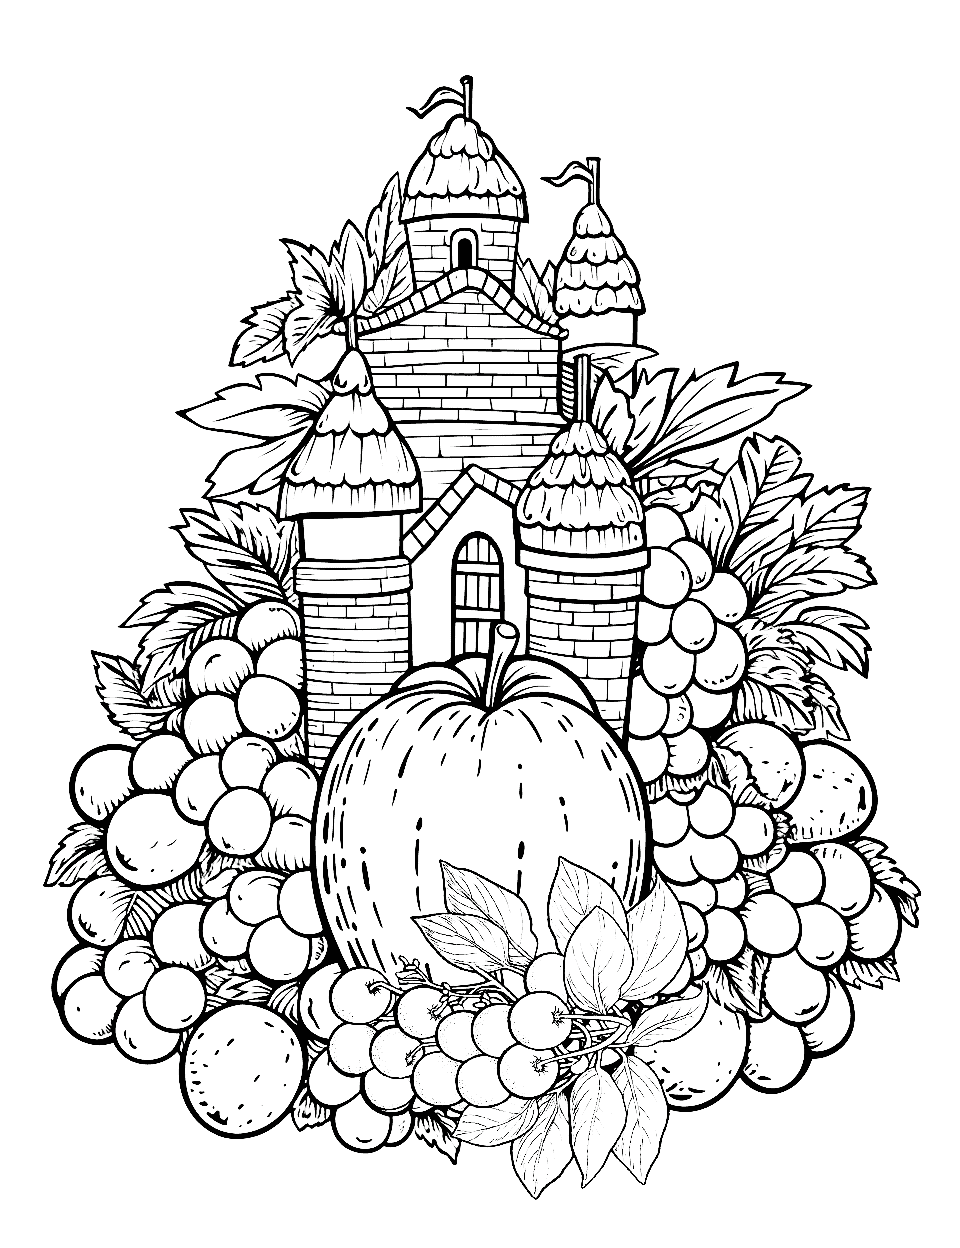 Fruit Fairytale Castle Coloring Page - A castle amidst different fruits.